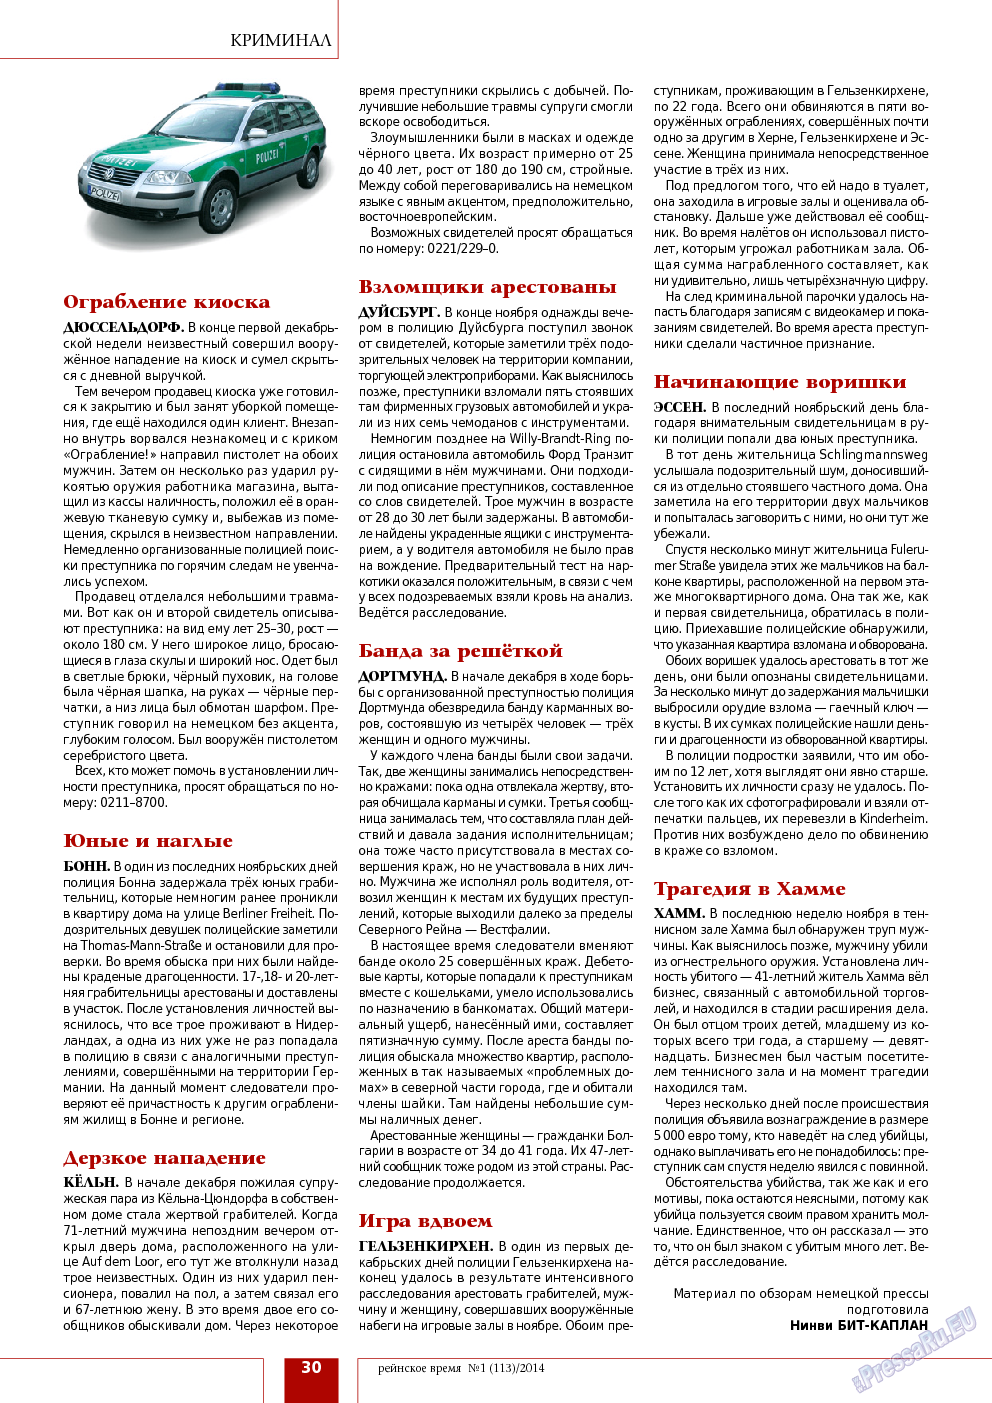 Рейнское время, журнал. 2014 №1 стр.30